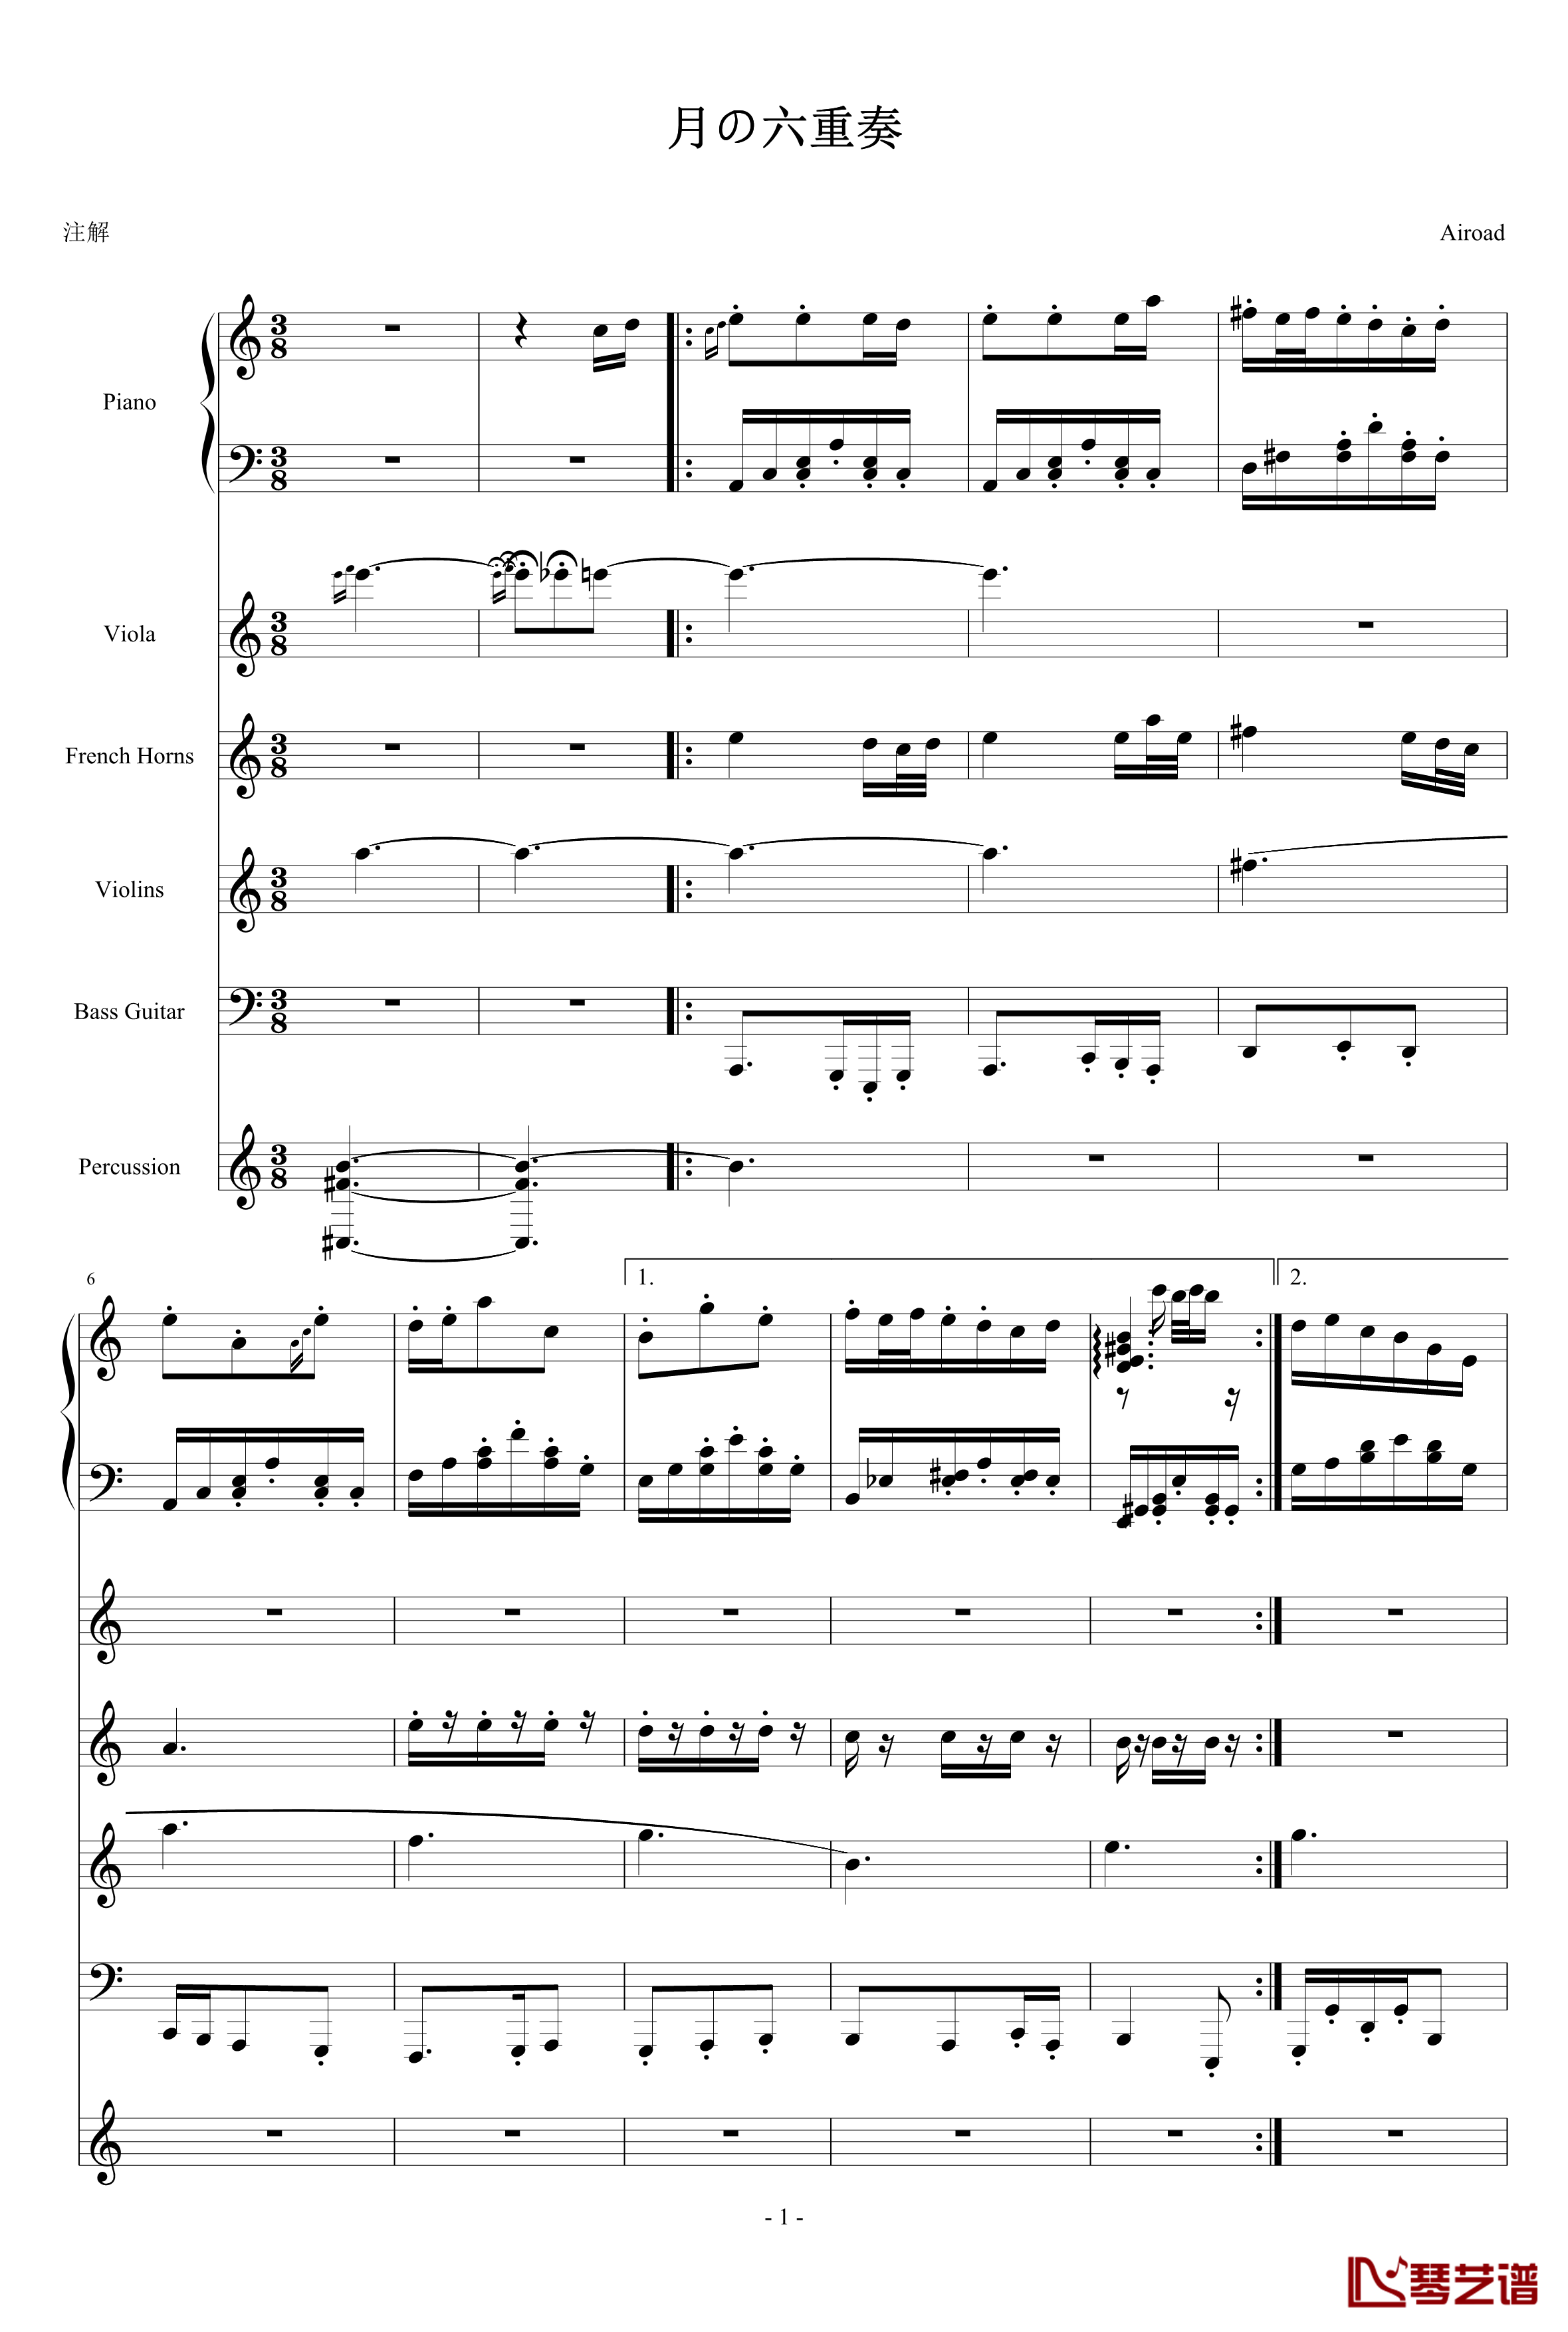 月の六重奏钢琴谱-A弦-airoad1